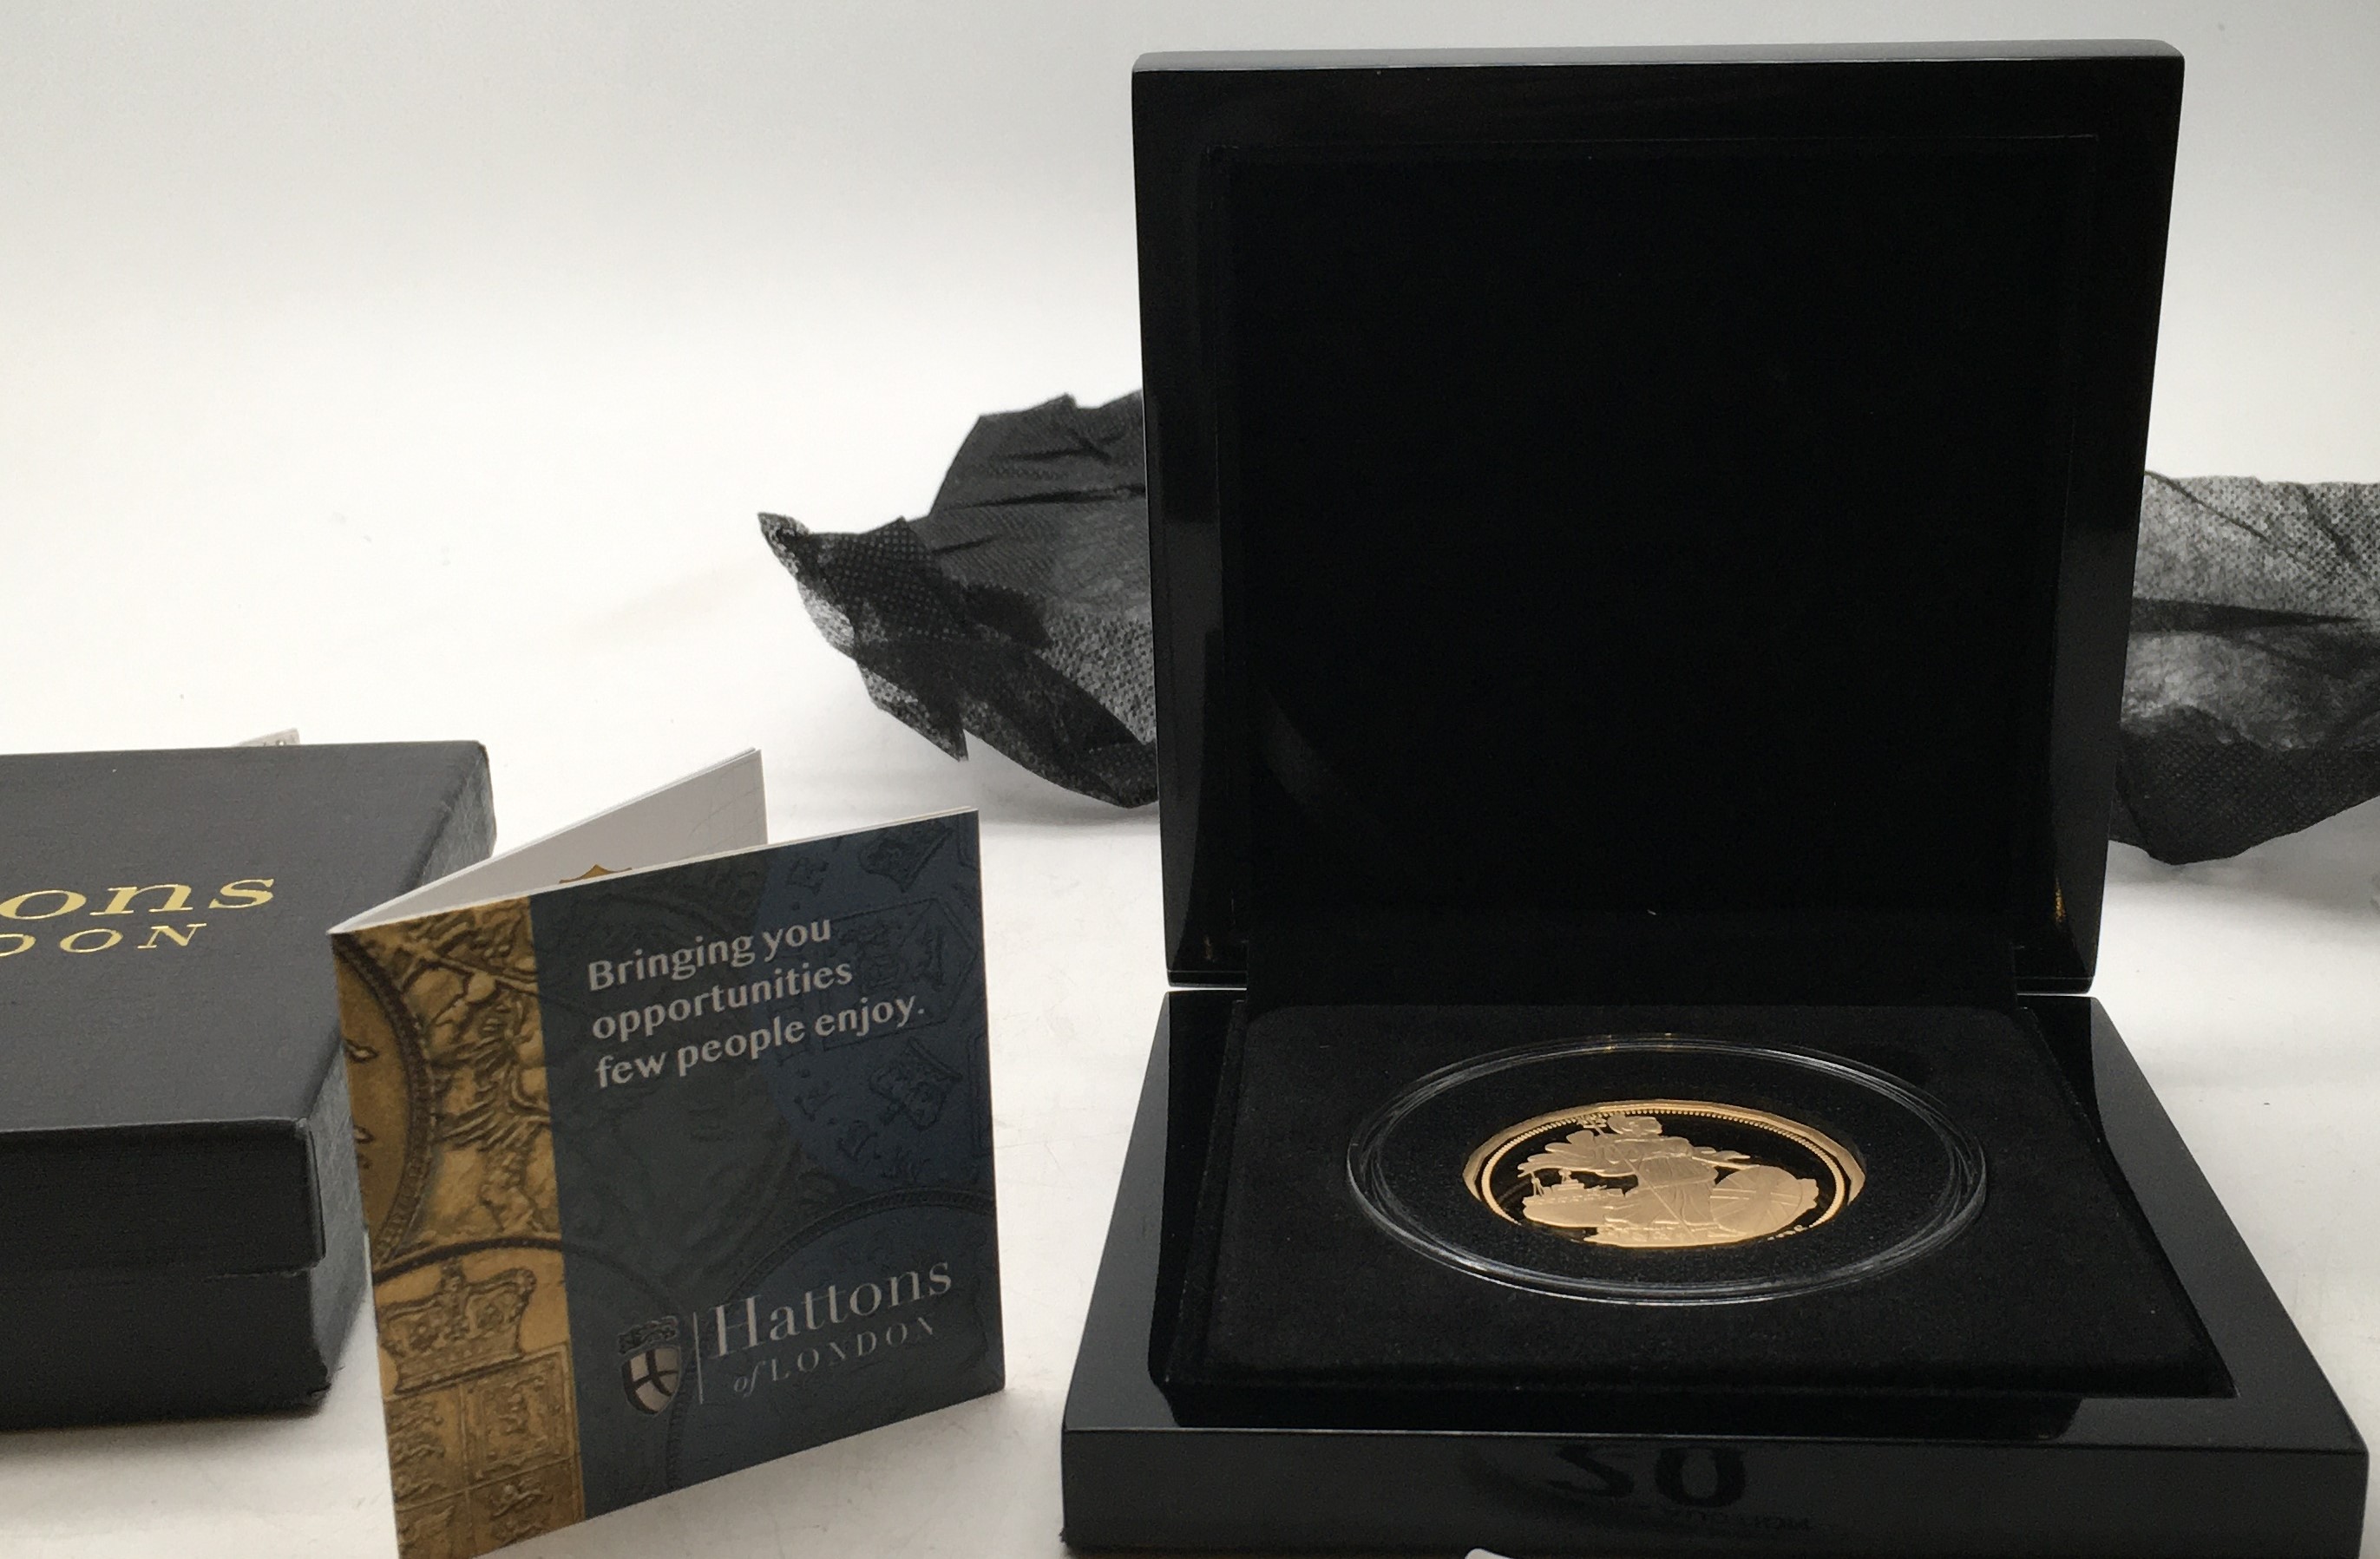 Tristan da Cunha a rare £20 coin 2020 issue celebrating EU Departure, a 20 sided coin 2.5 ounces